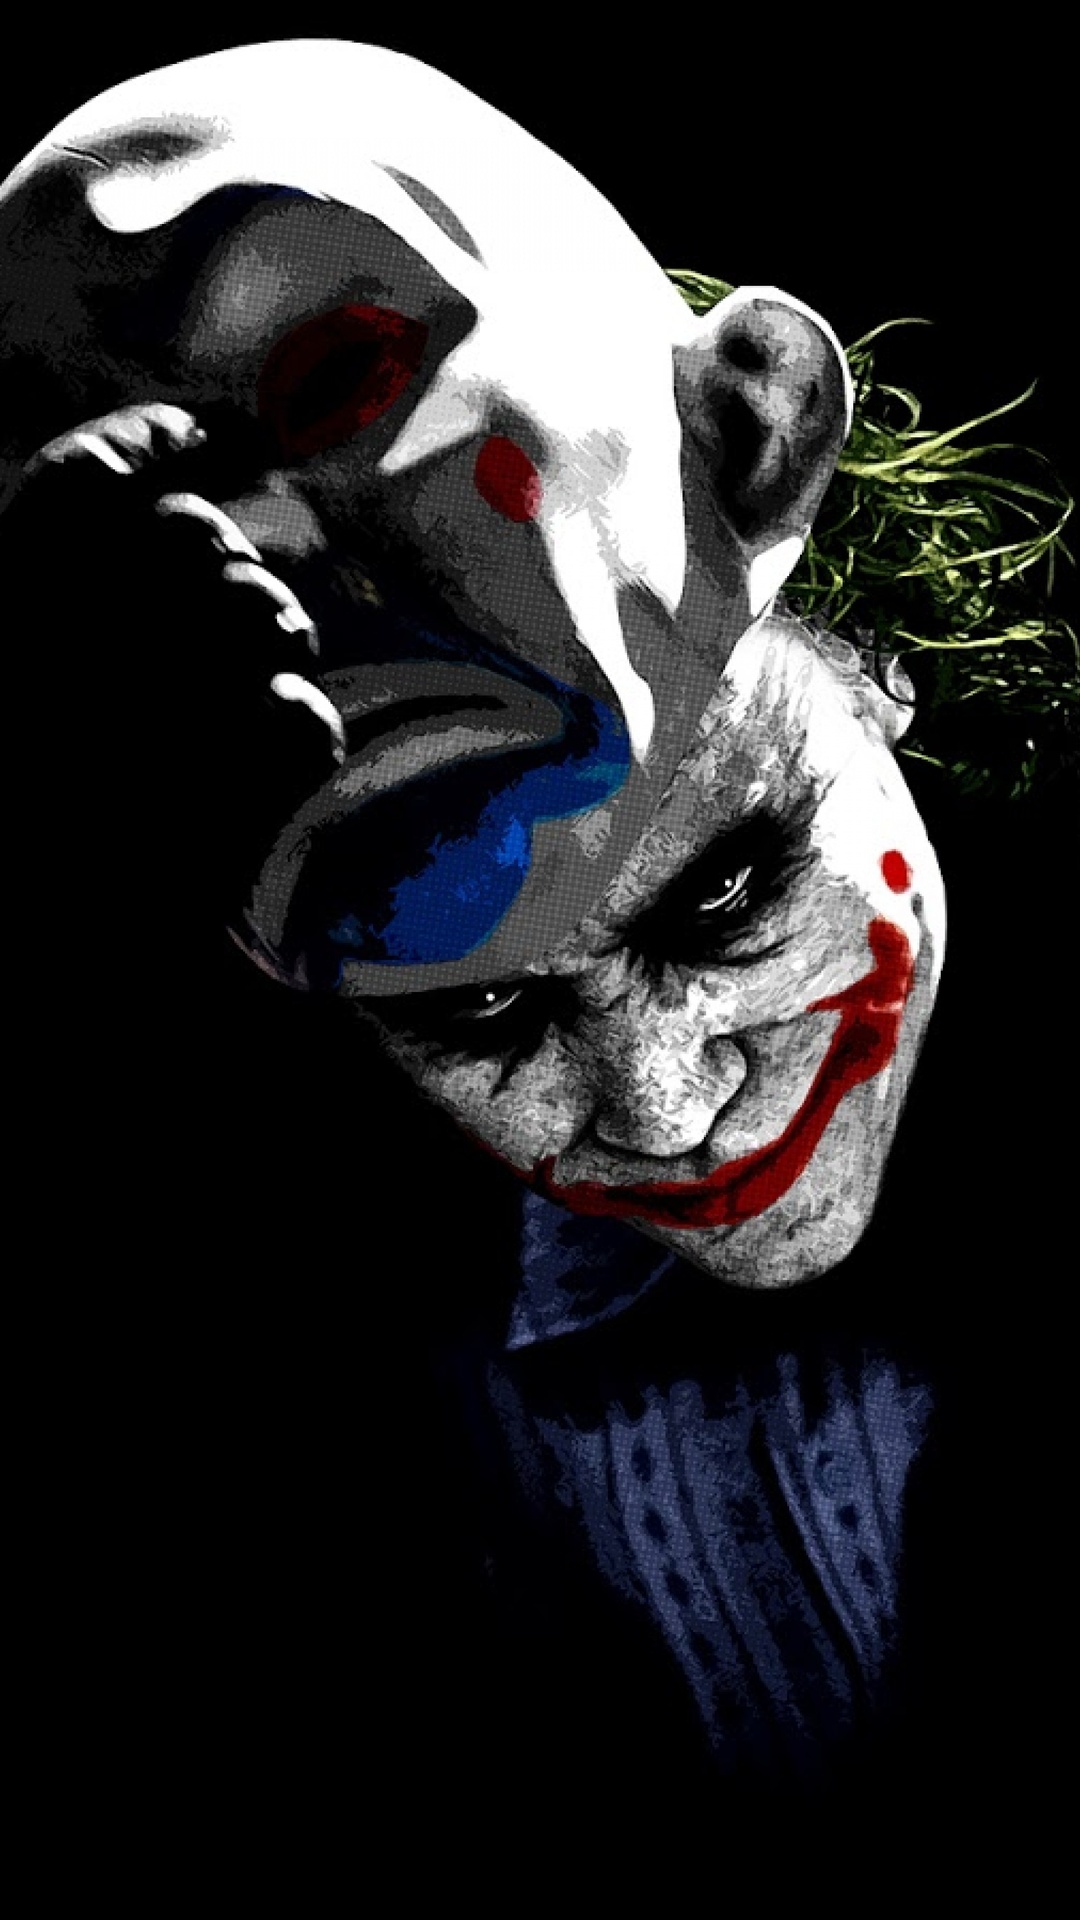 Joker Images Hd Mobile Wallpaper 4k